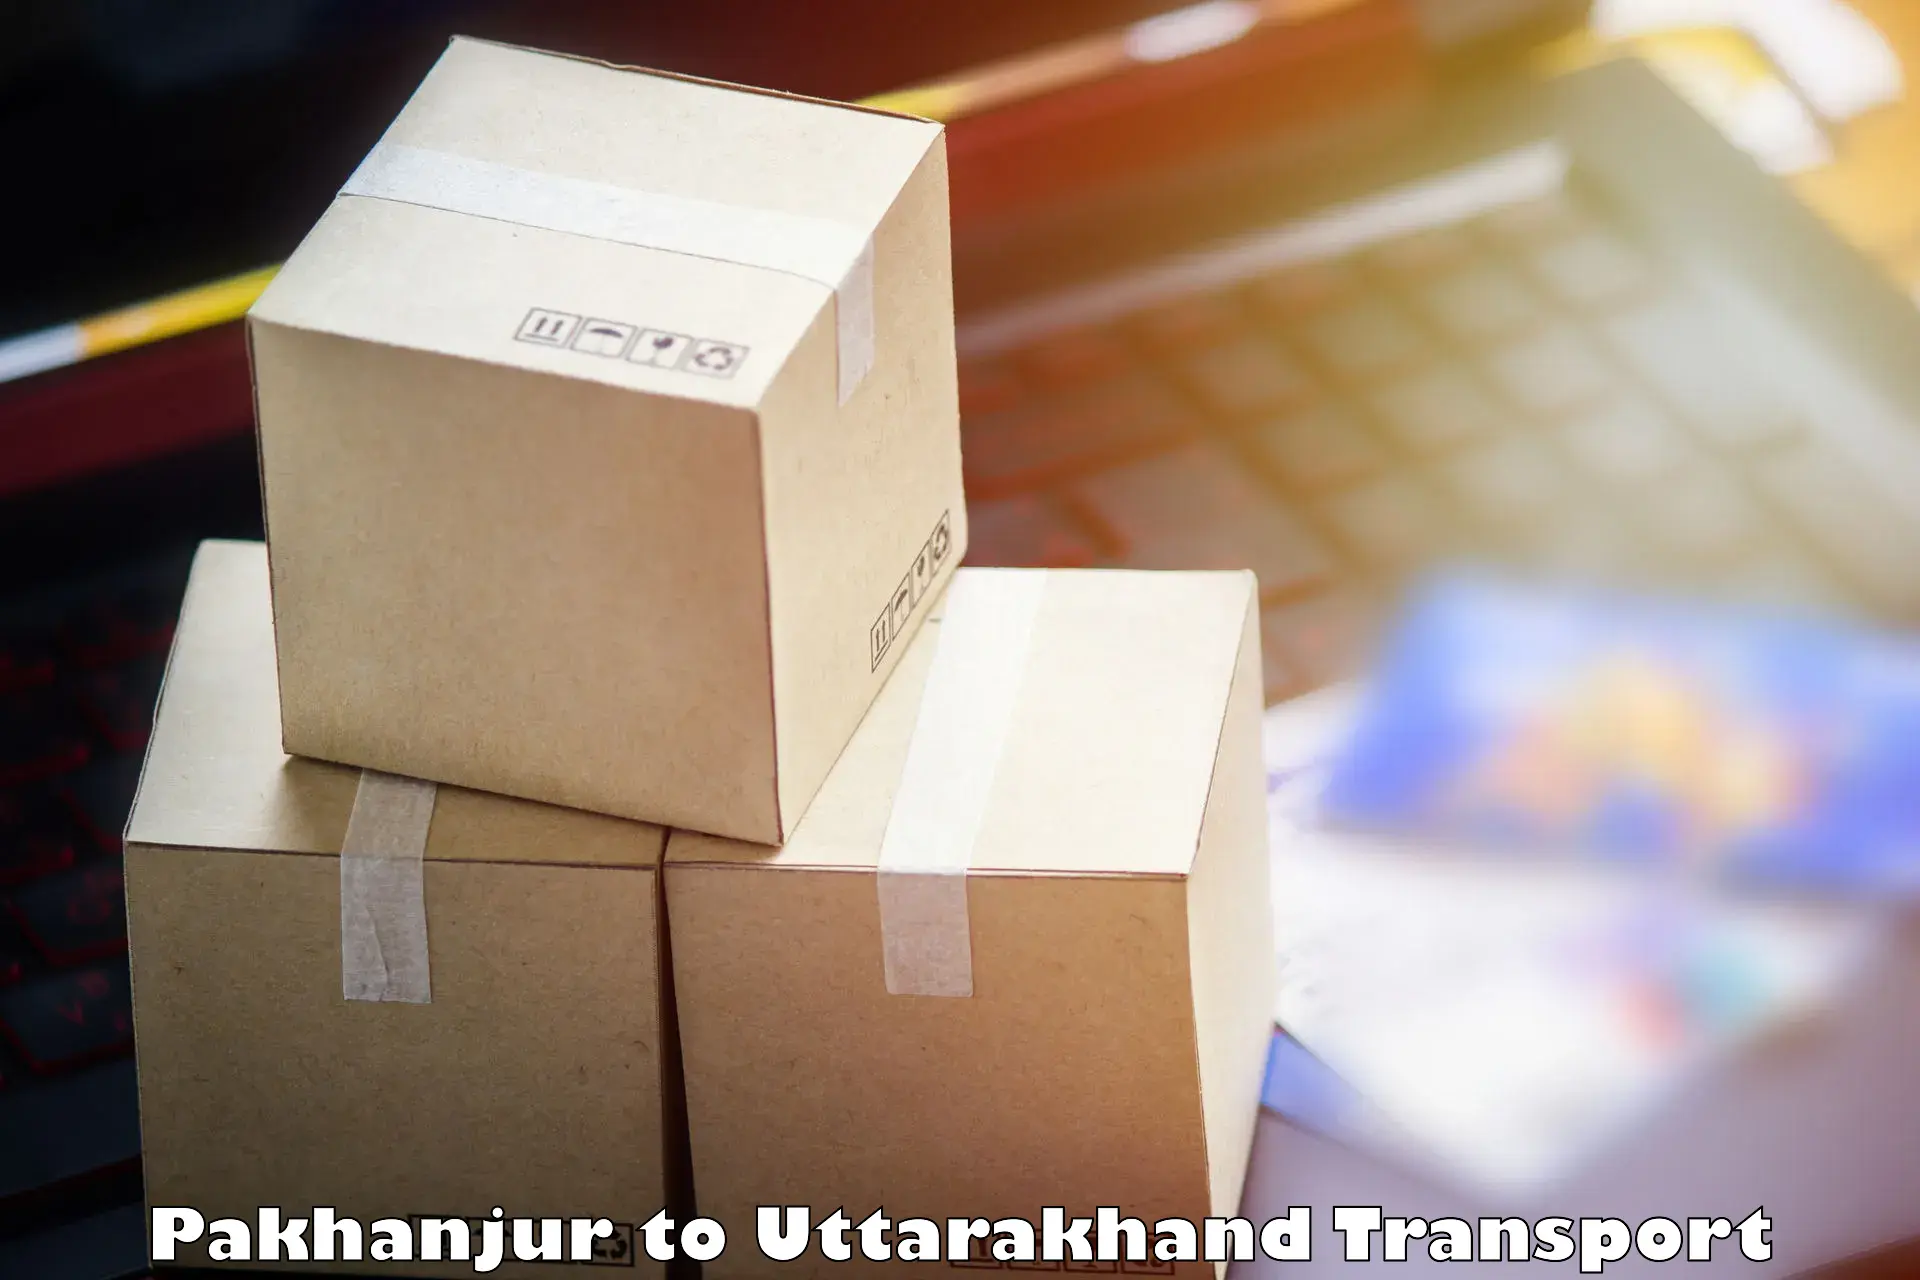 Furniture transport service Pakhanjur to Dehradun